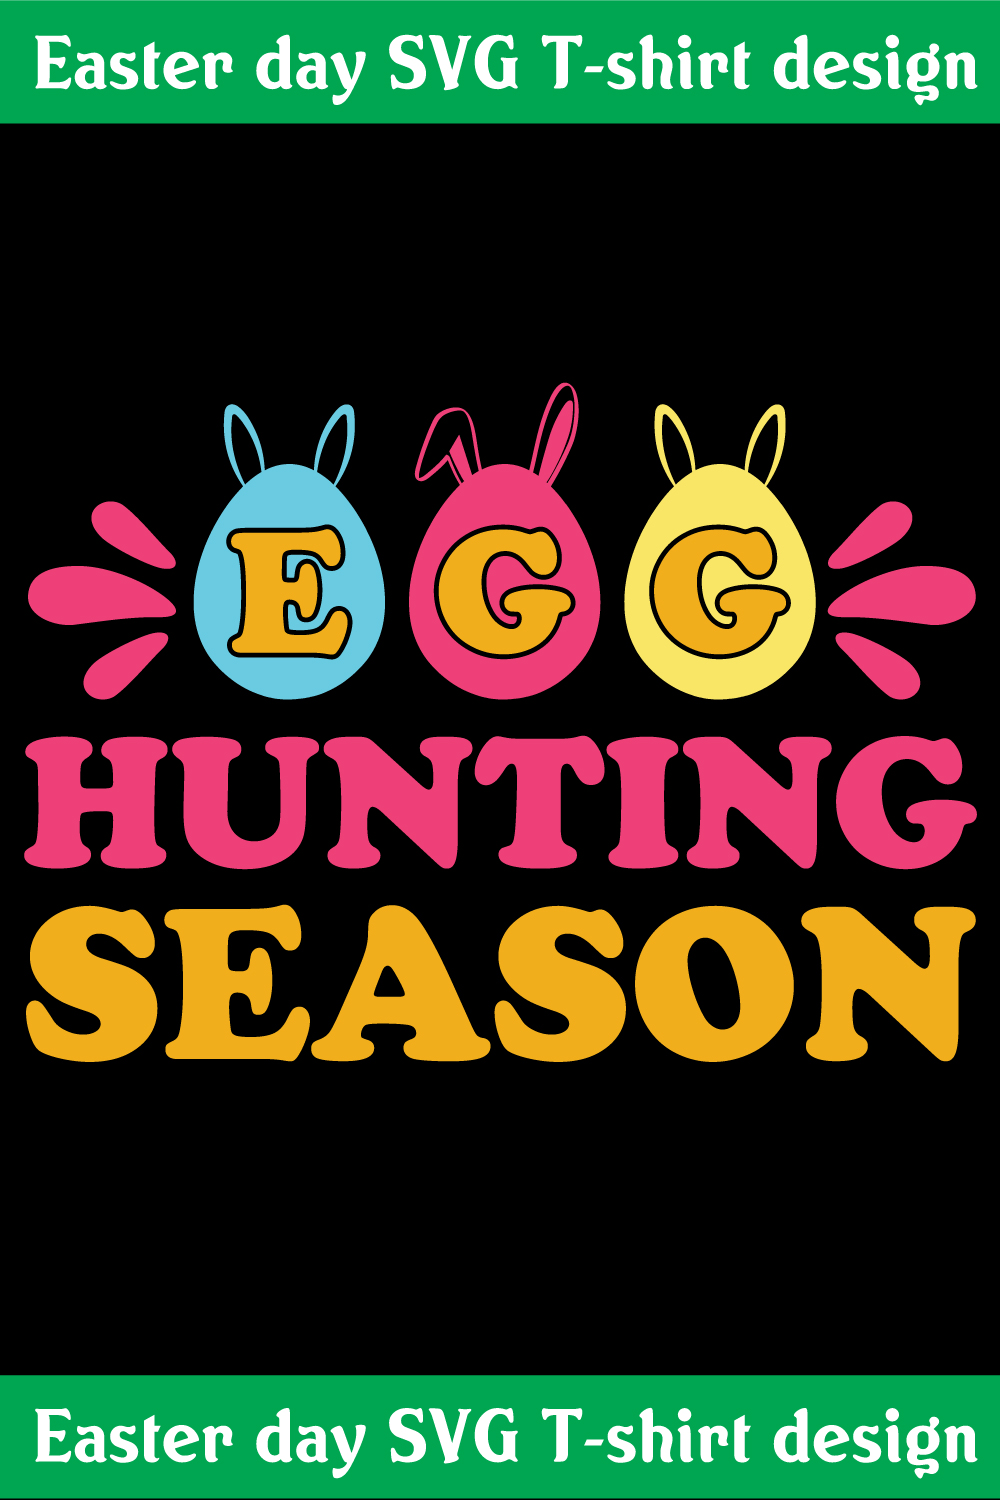 EGG hunting season T-shirt design pinterest preview image.